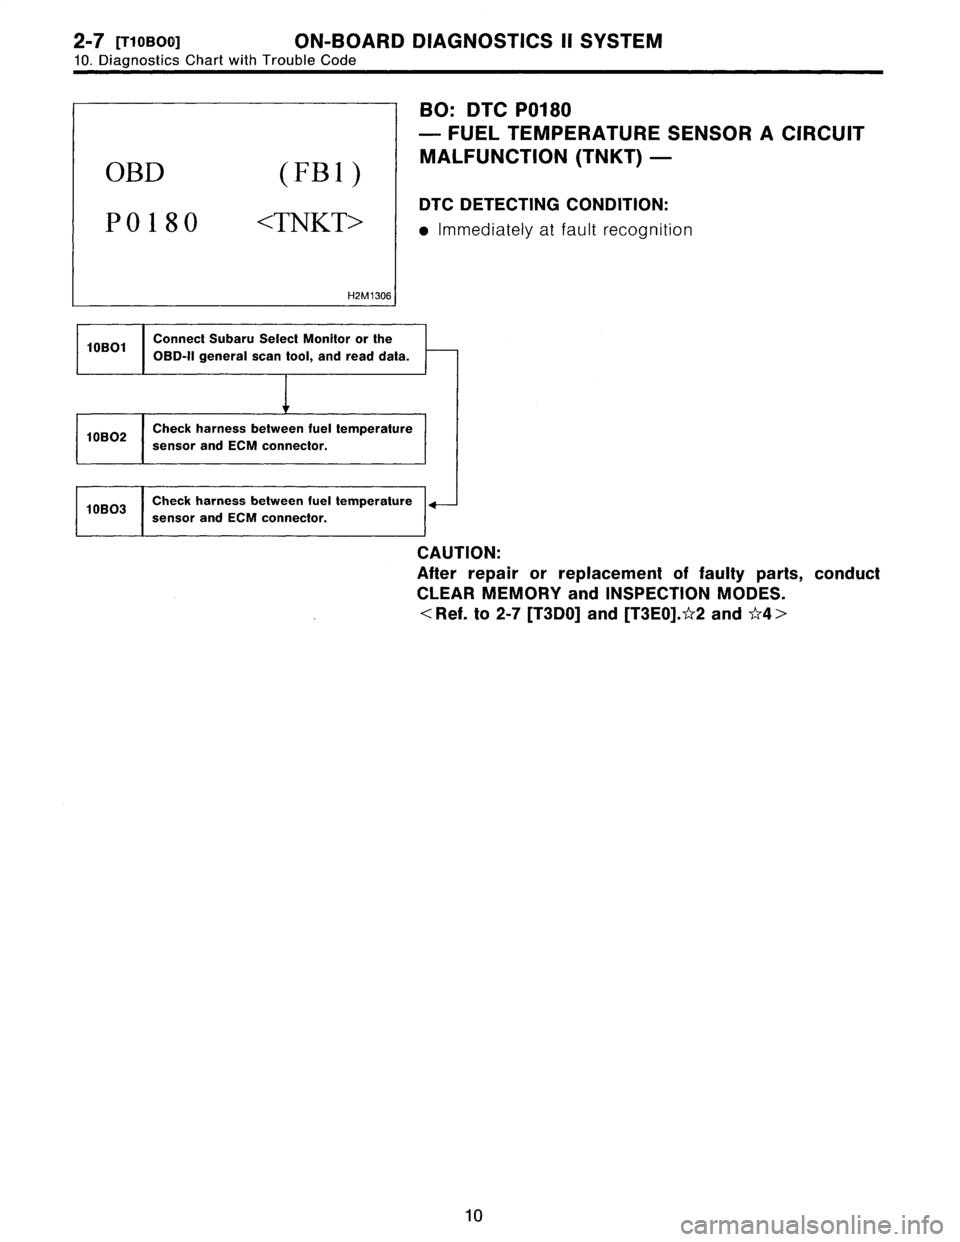 SUBARU LEGACY 1996  Service Repair Manual 2-7
[T10BOa]
ON-BOARD
DIAGNOSTICS
II
SYSTEM

10
.
Diagnostics
Chart
with
Trouble
Code

OBD
(FBI)

P0180
<TNKT>

H2M1306

BO
:
DTC
P0180

-
FUEL
TEMPERATURE
SENSOR
A
CIRCUIT

MALFUNCTION
(TNKT)
-

DTC
